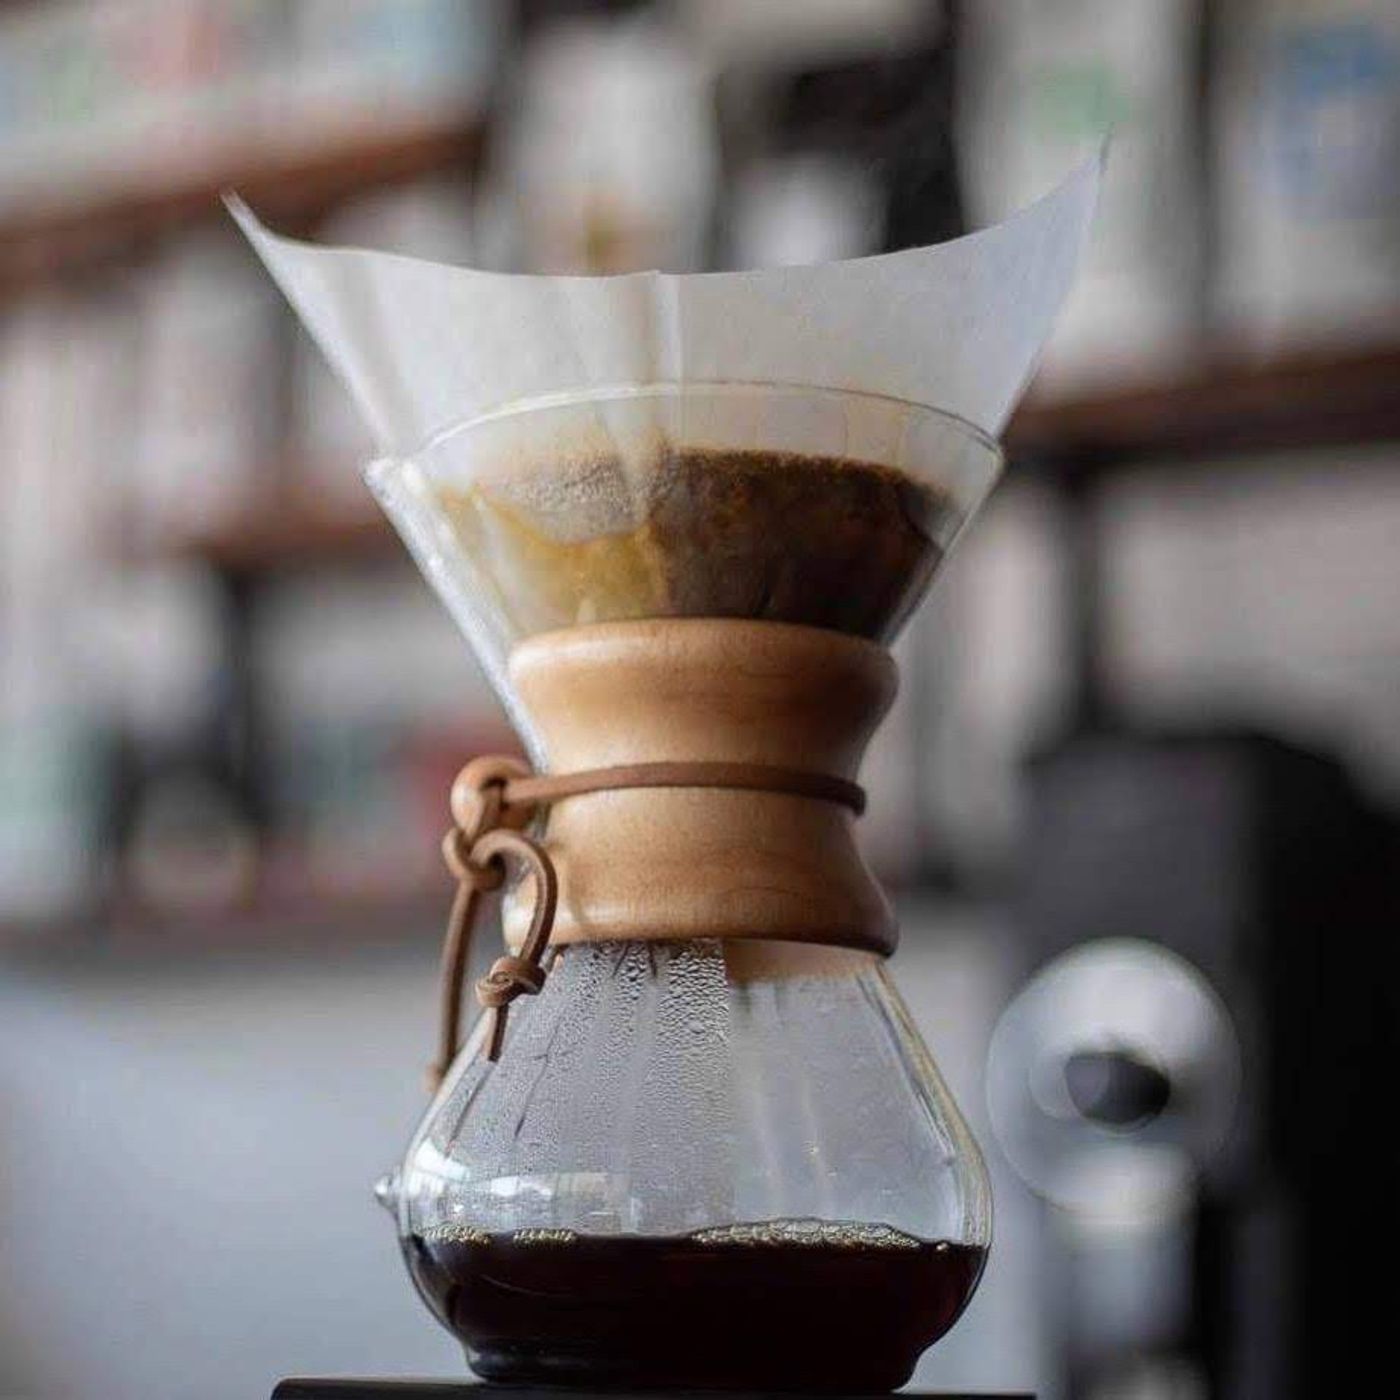 Chemex, un método elegante para preparar y compartir buen café